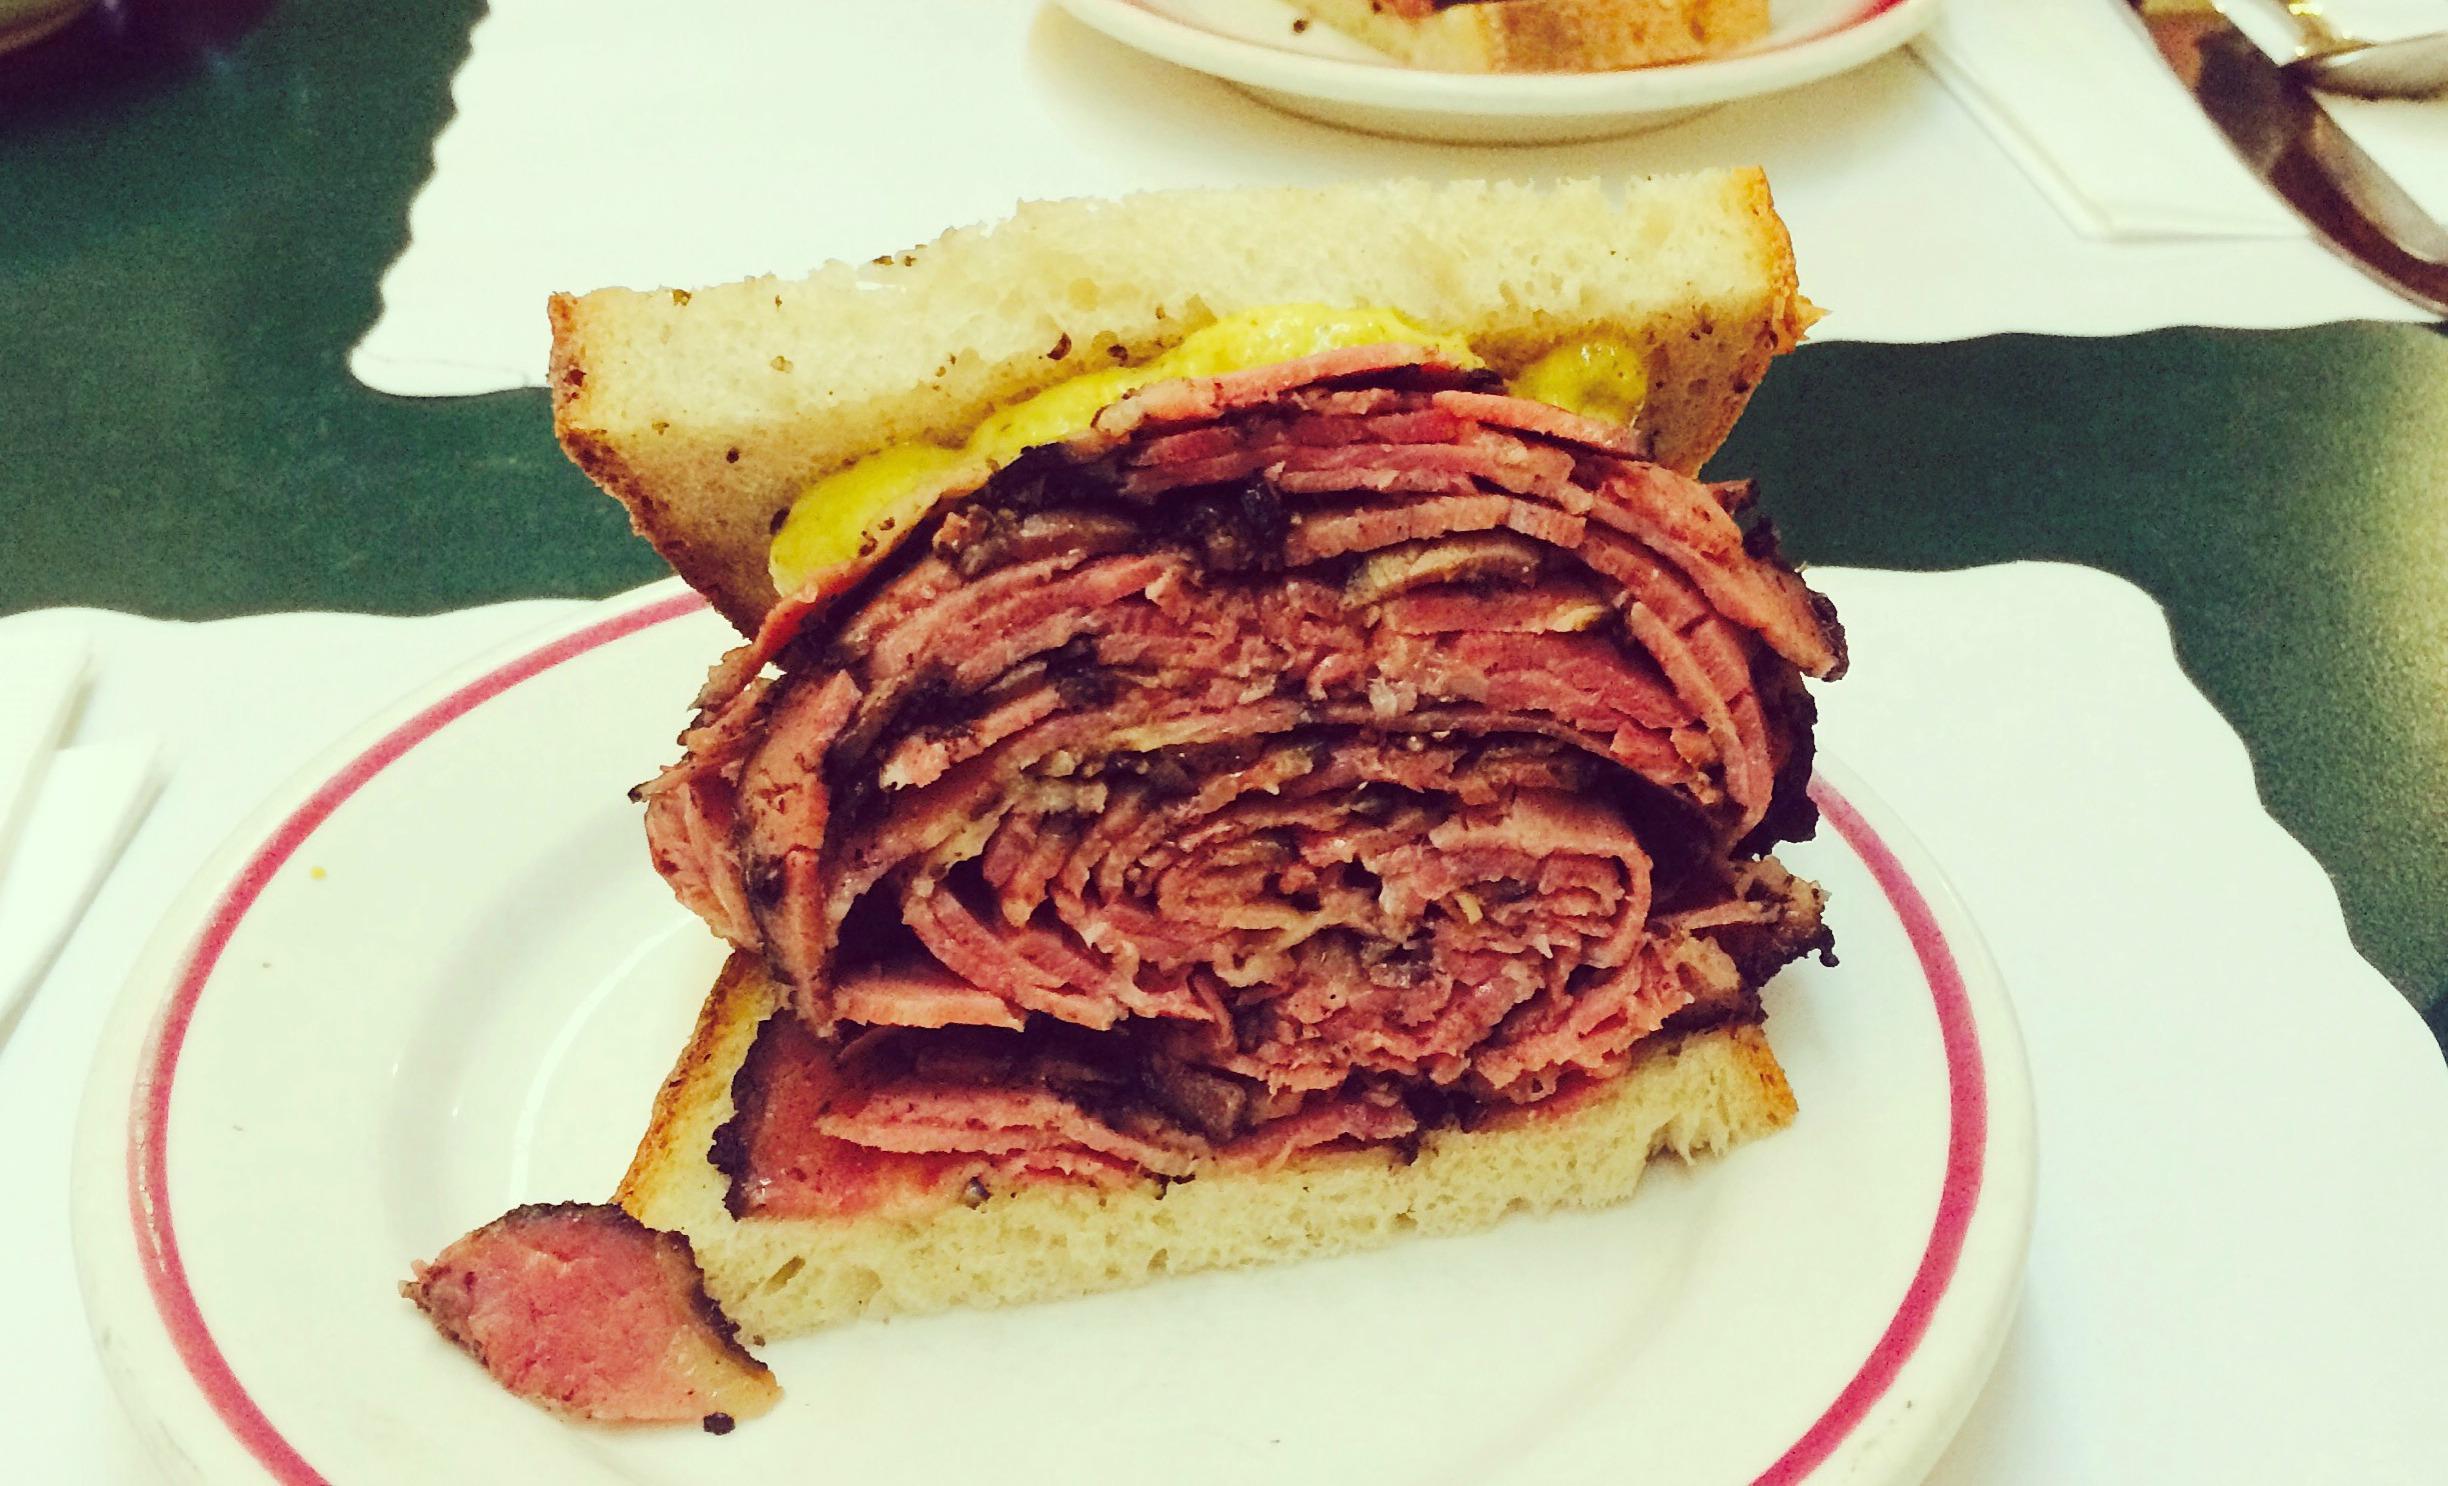 Just one half of the pastrami sandwich at Ben’s Best in Rego Park, Queens